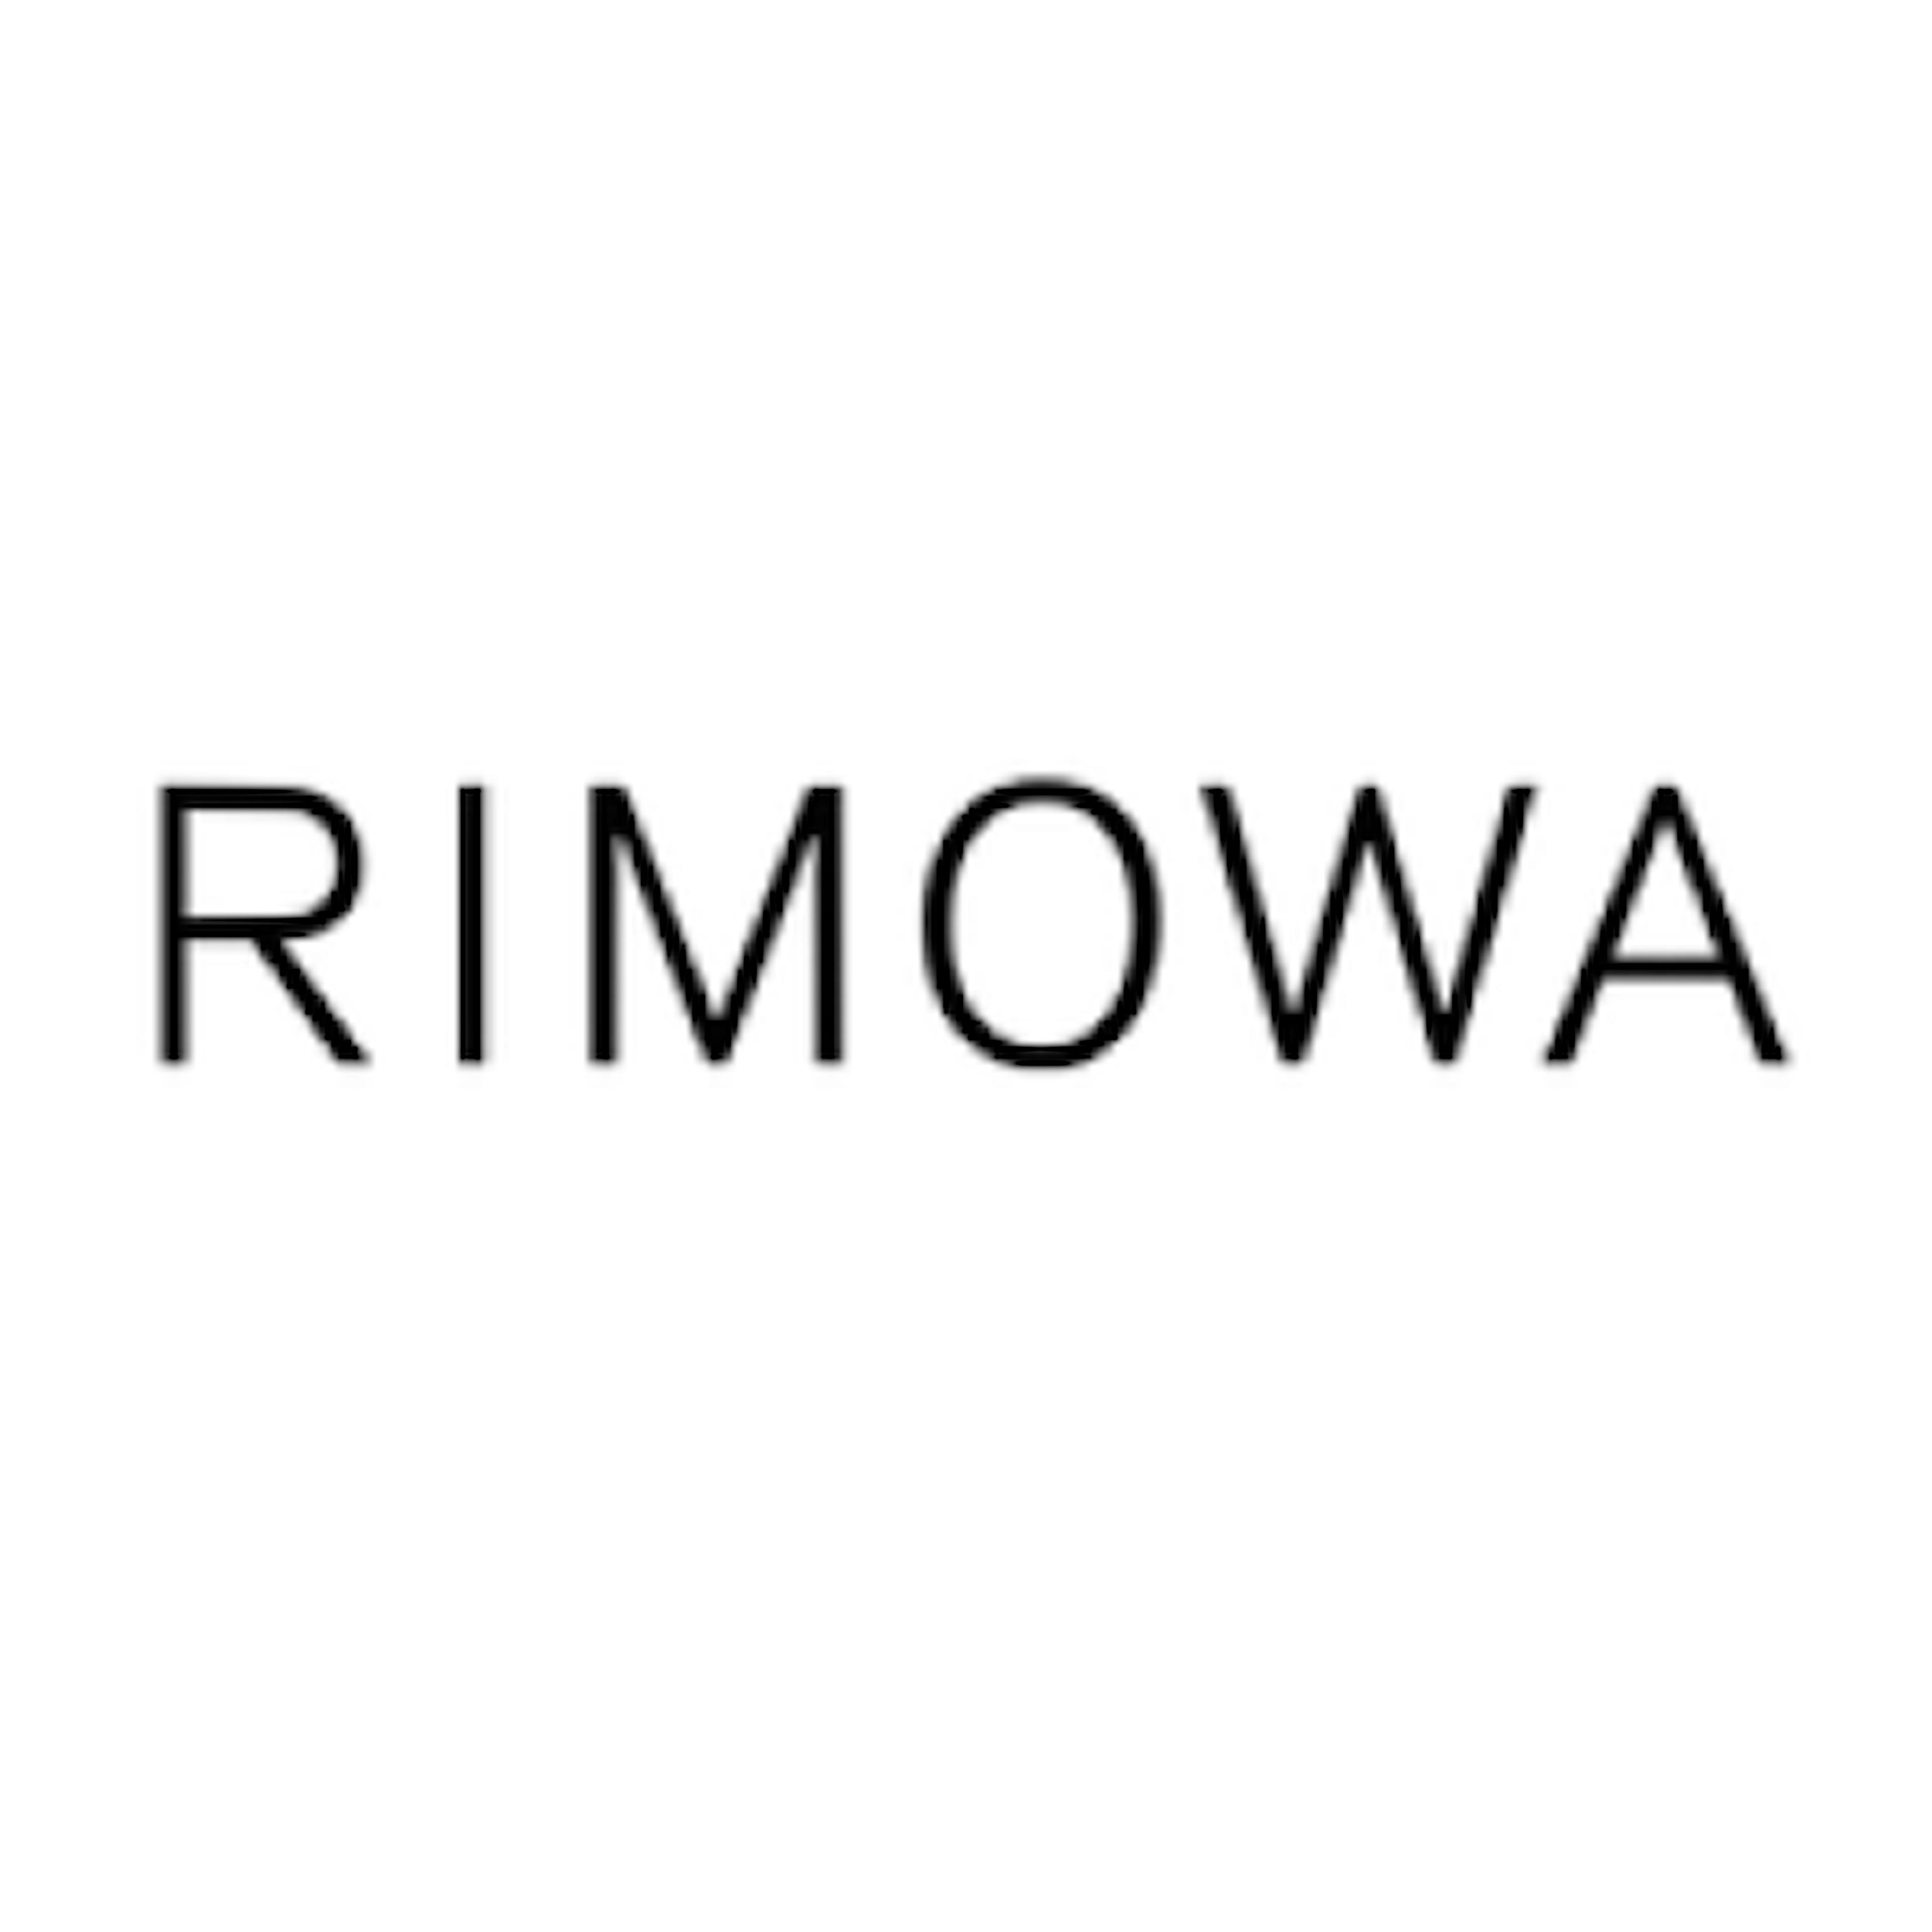 logo Rimowa